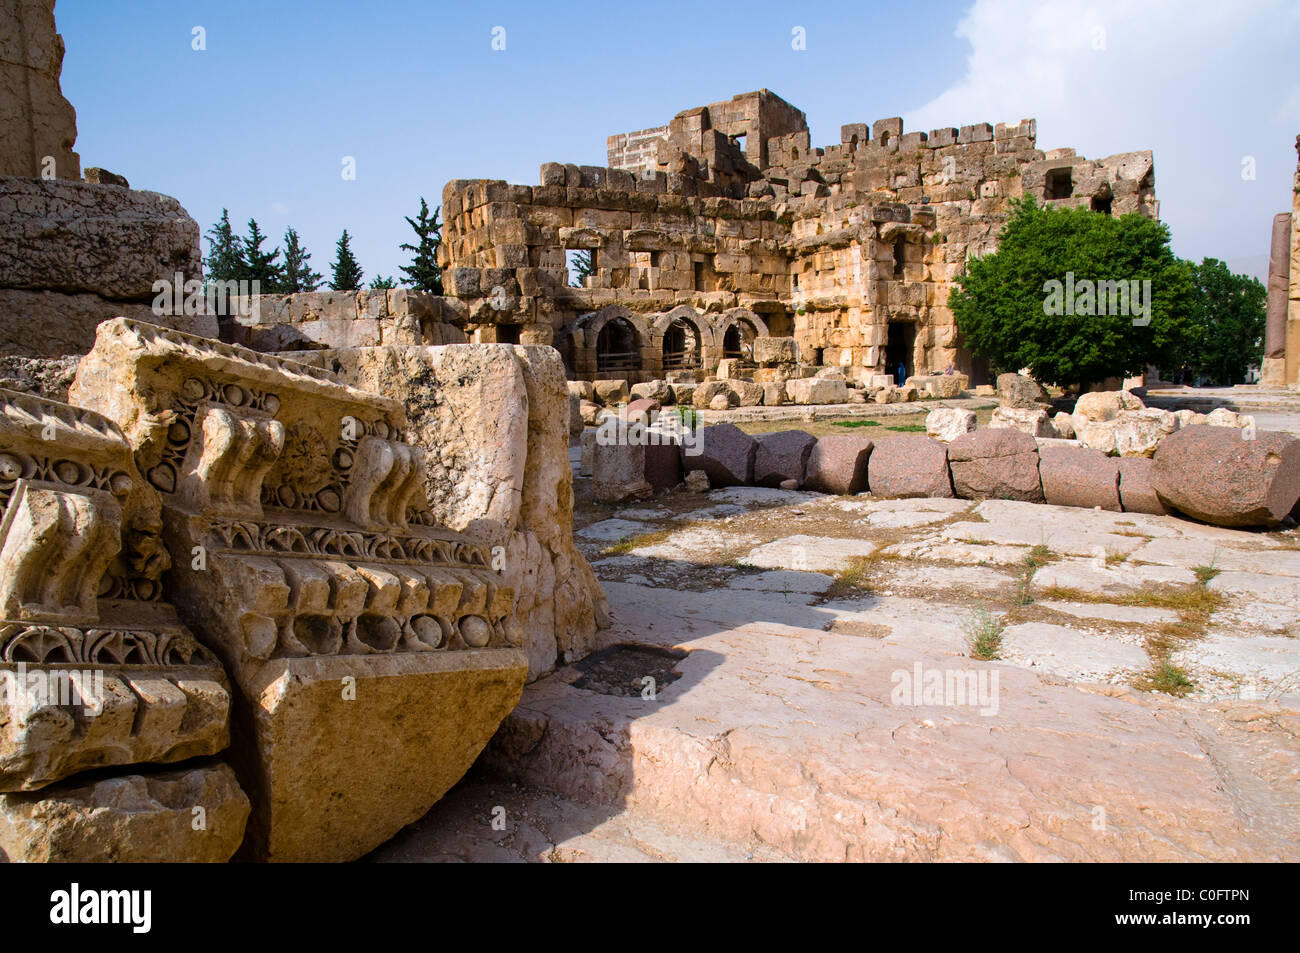 Grande cour, site archéologique de Baalbek, UNESCO World Heritage Site. La vallée de la Bekaa. Le Liban. Banque D'Images